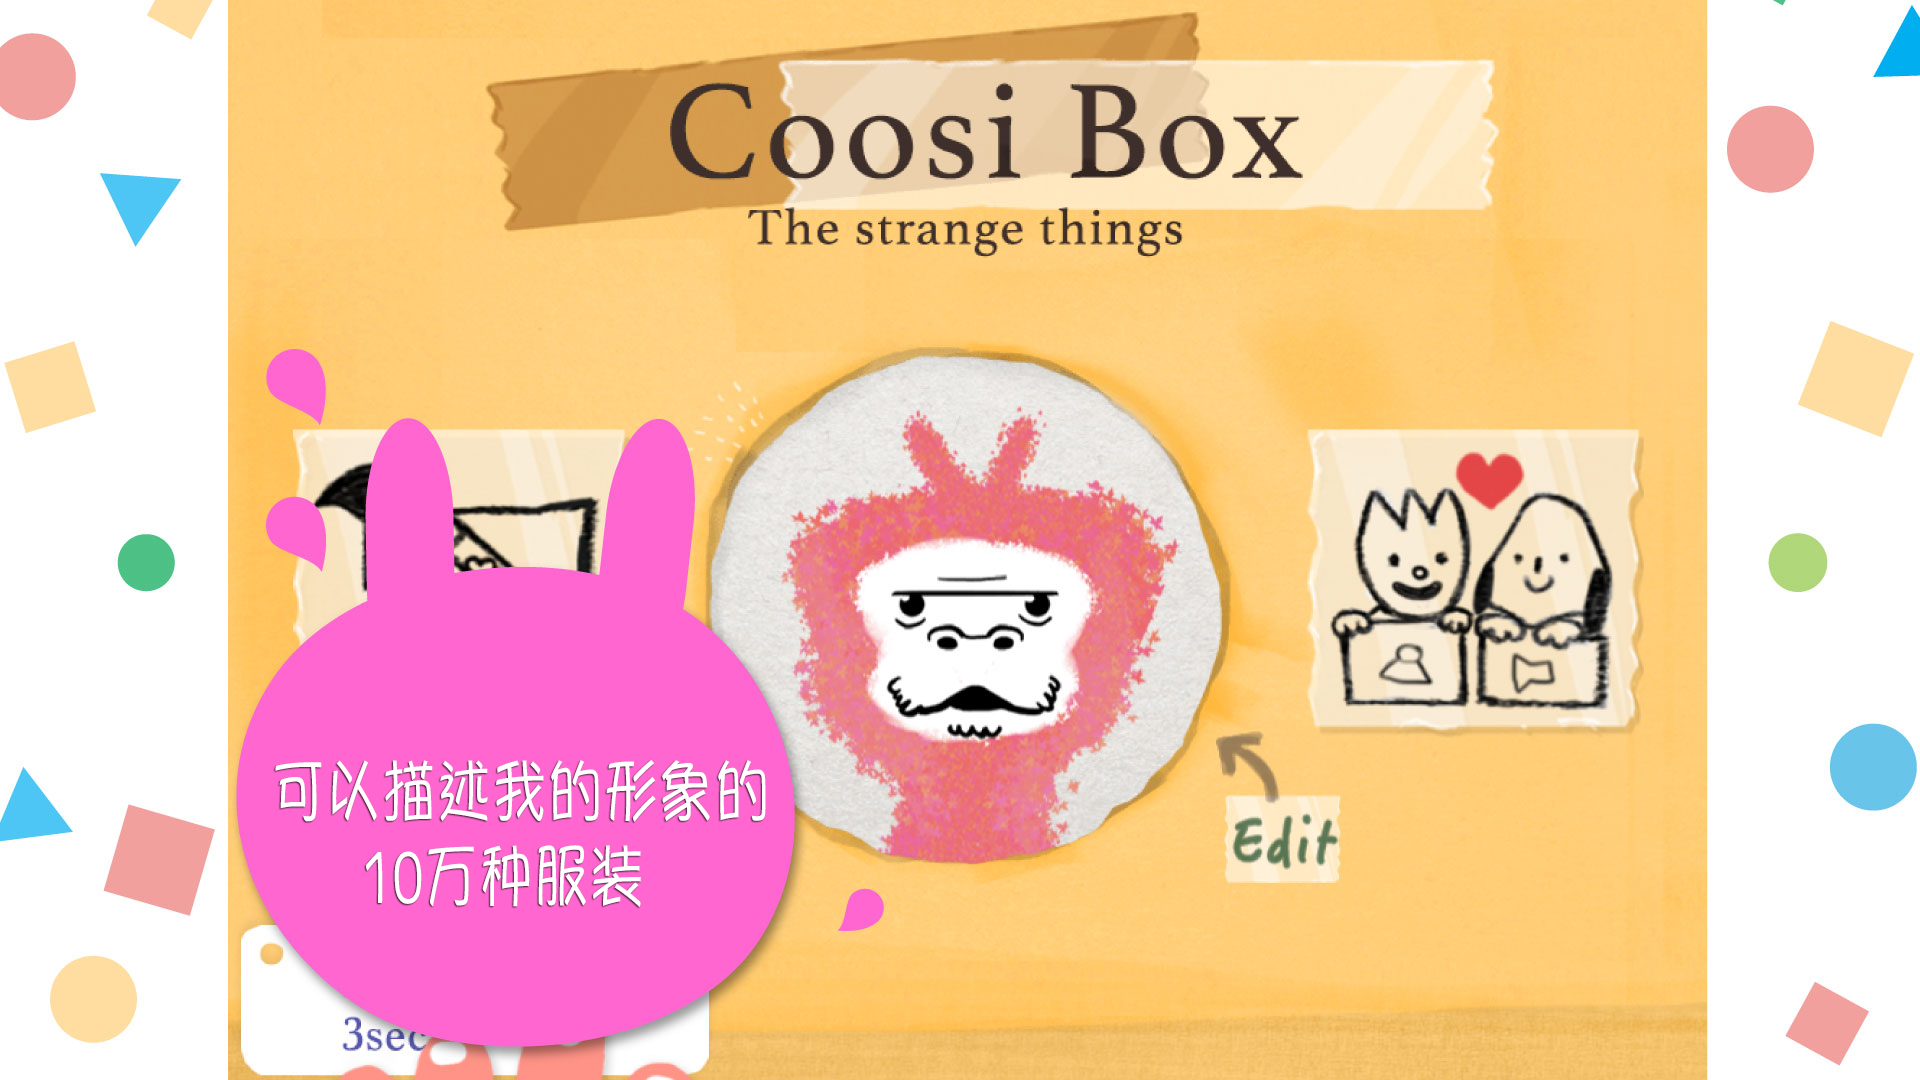 Coosi Box